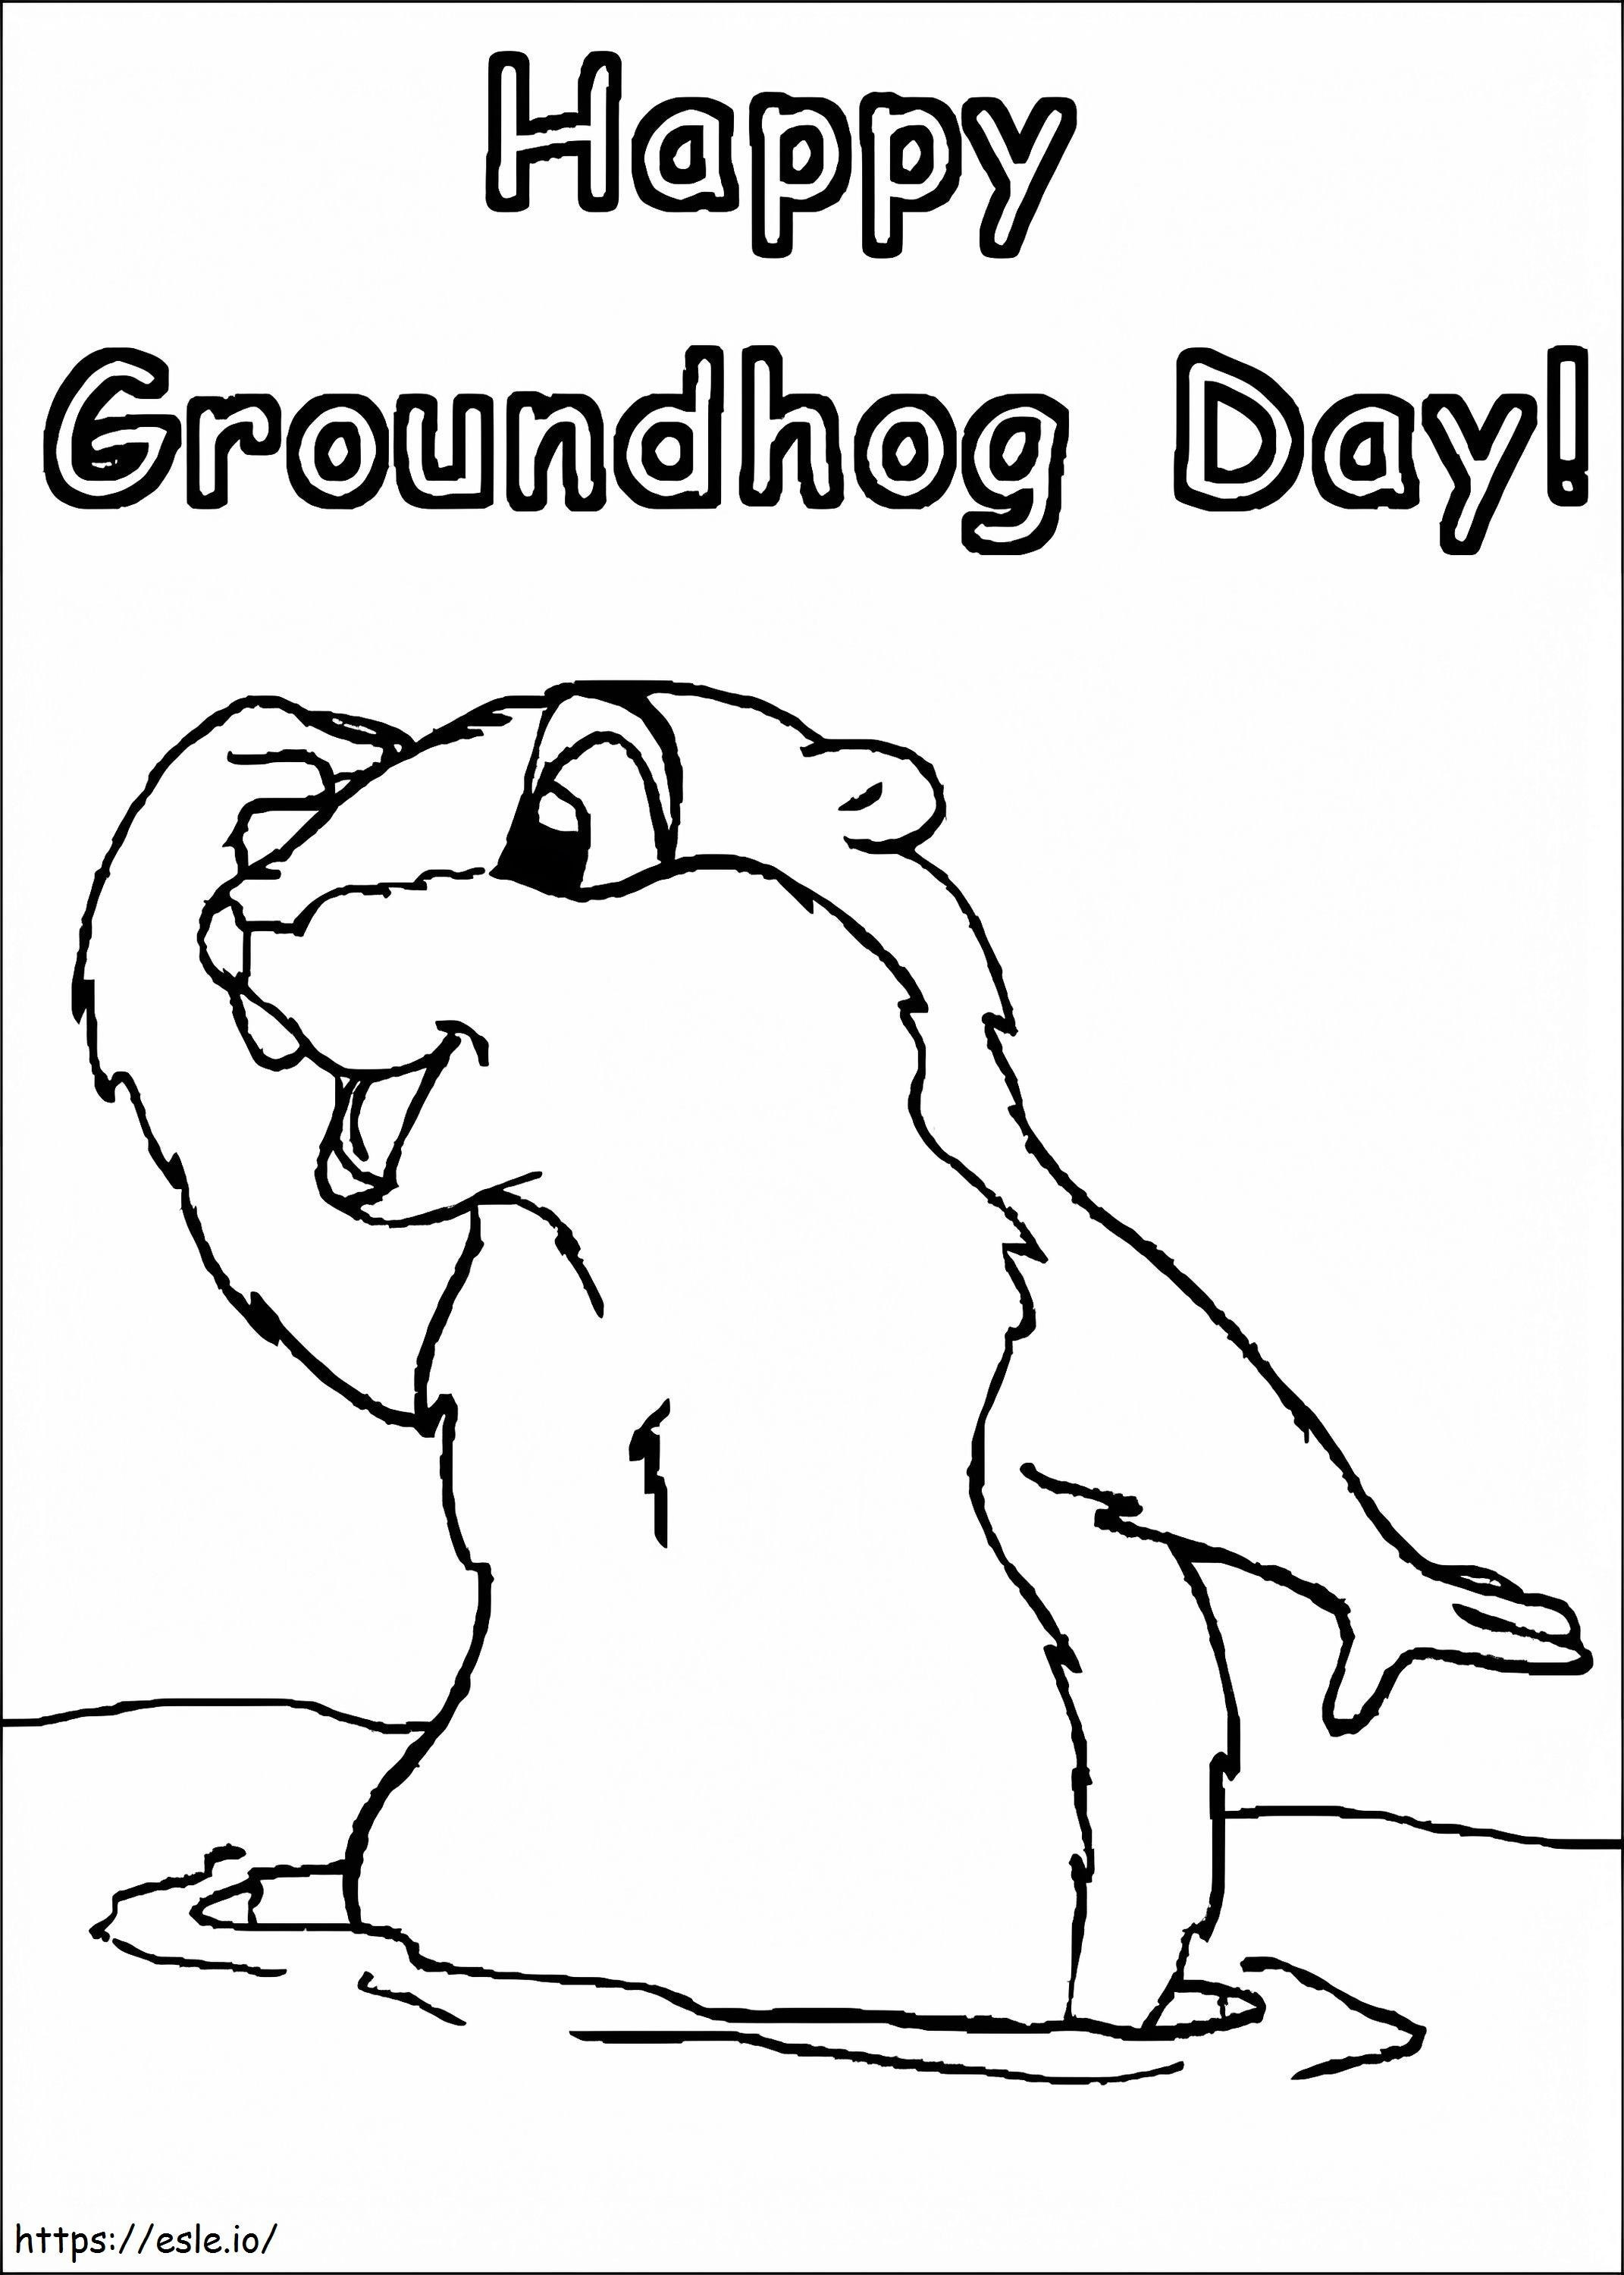 Groundhog Hari 7 Gambar Mewarnai